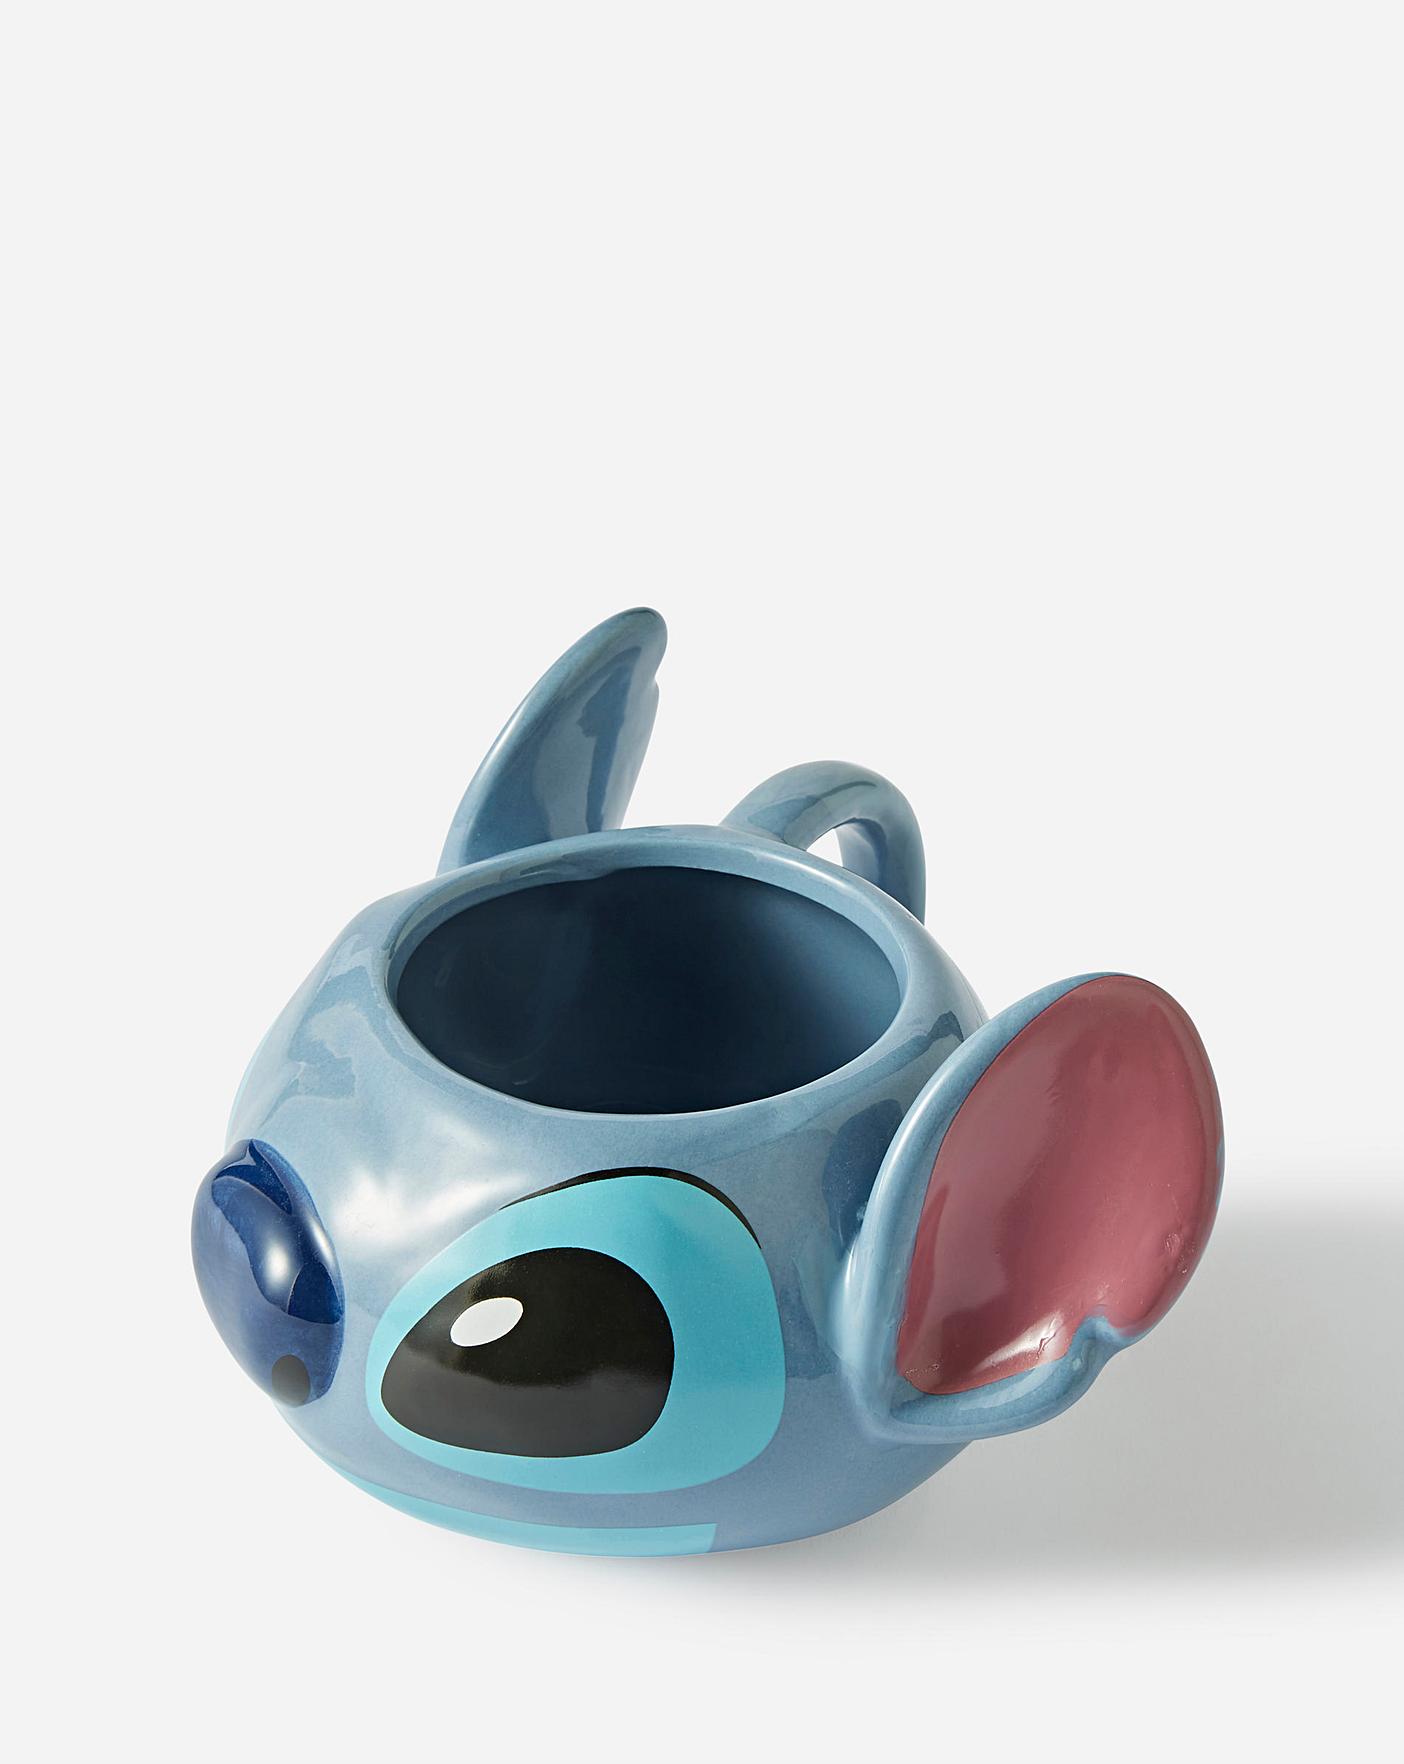 Tasse Paladone 3D Stitch Head Lilo & Stitch Disney